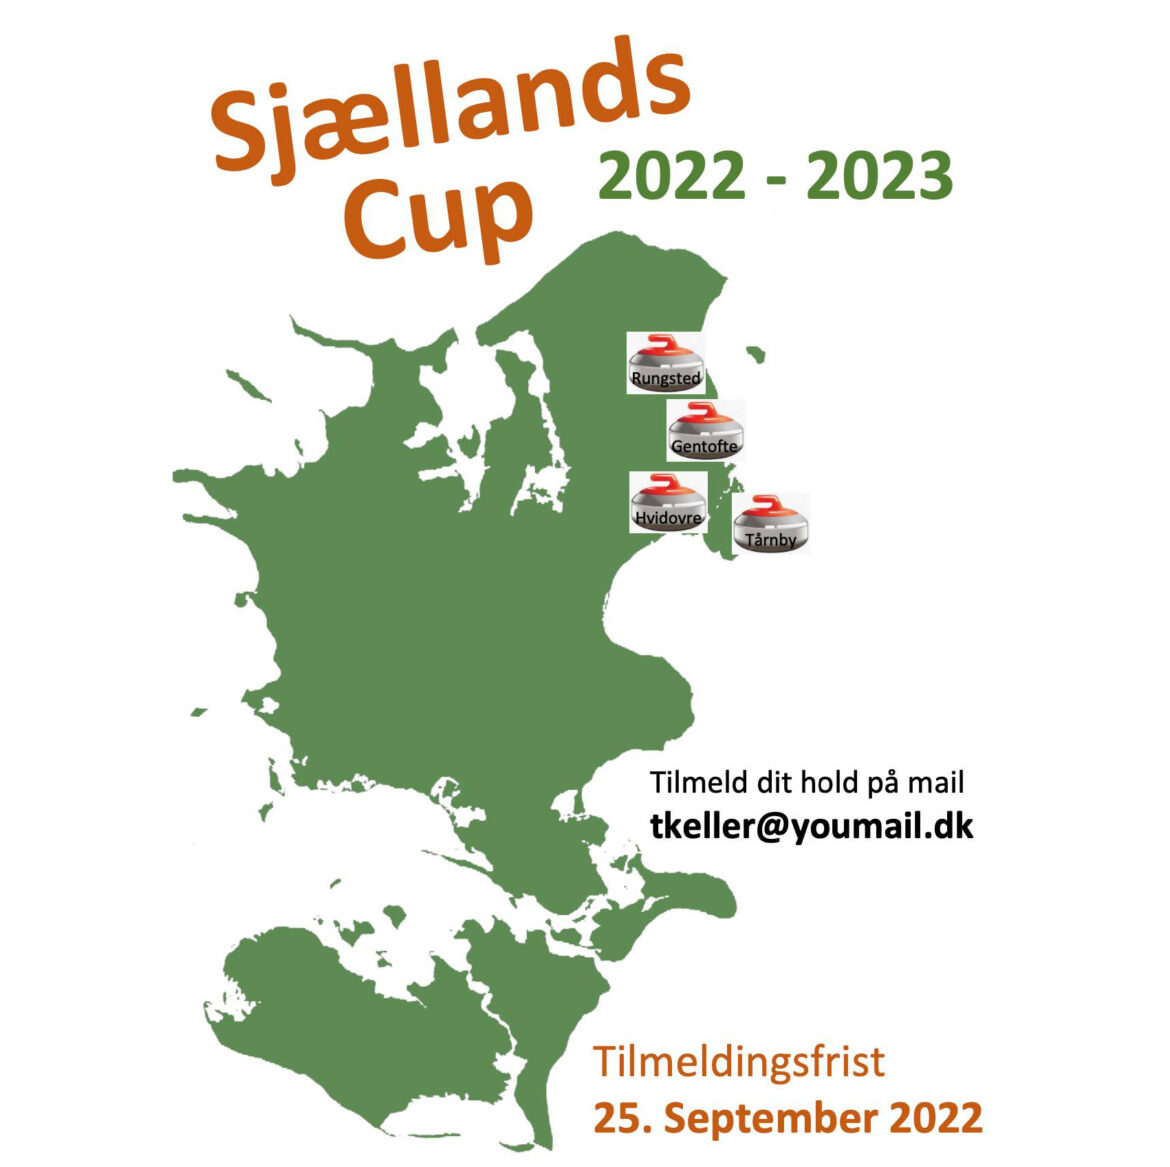 Tilmelding til Sjællandscup 2022/23